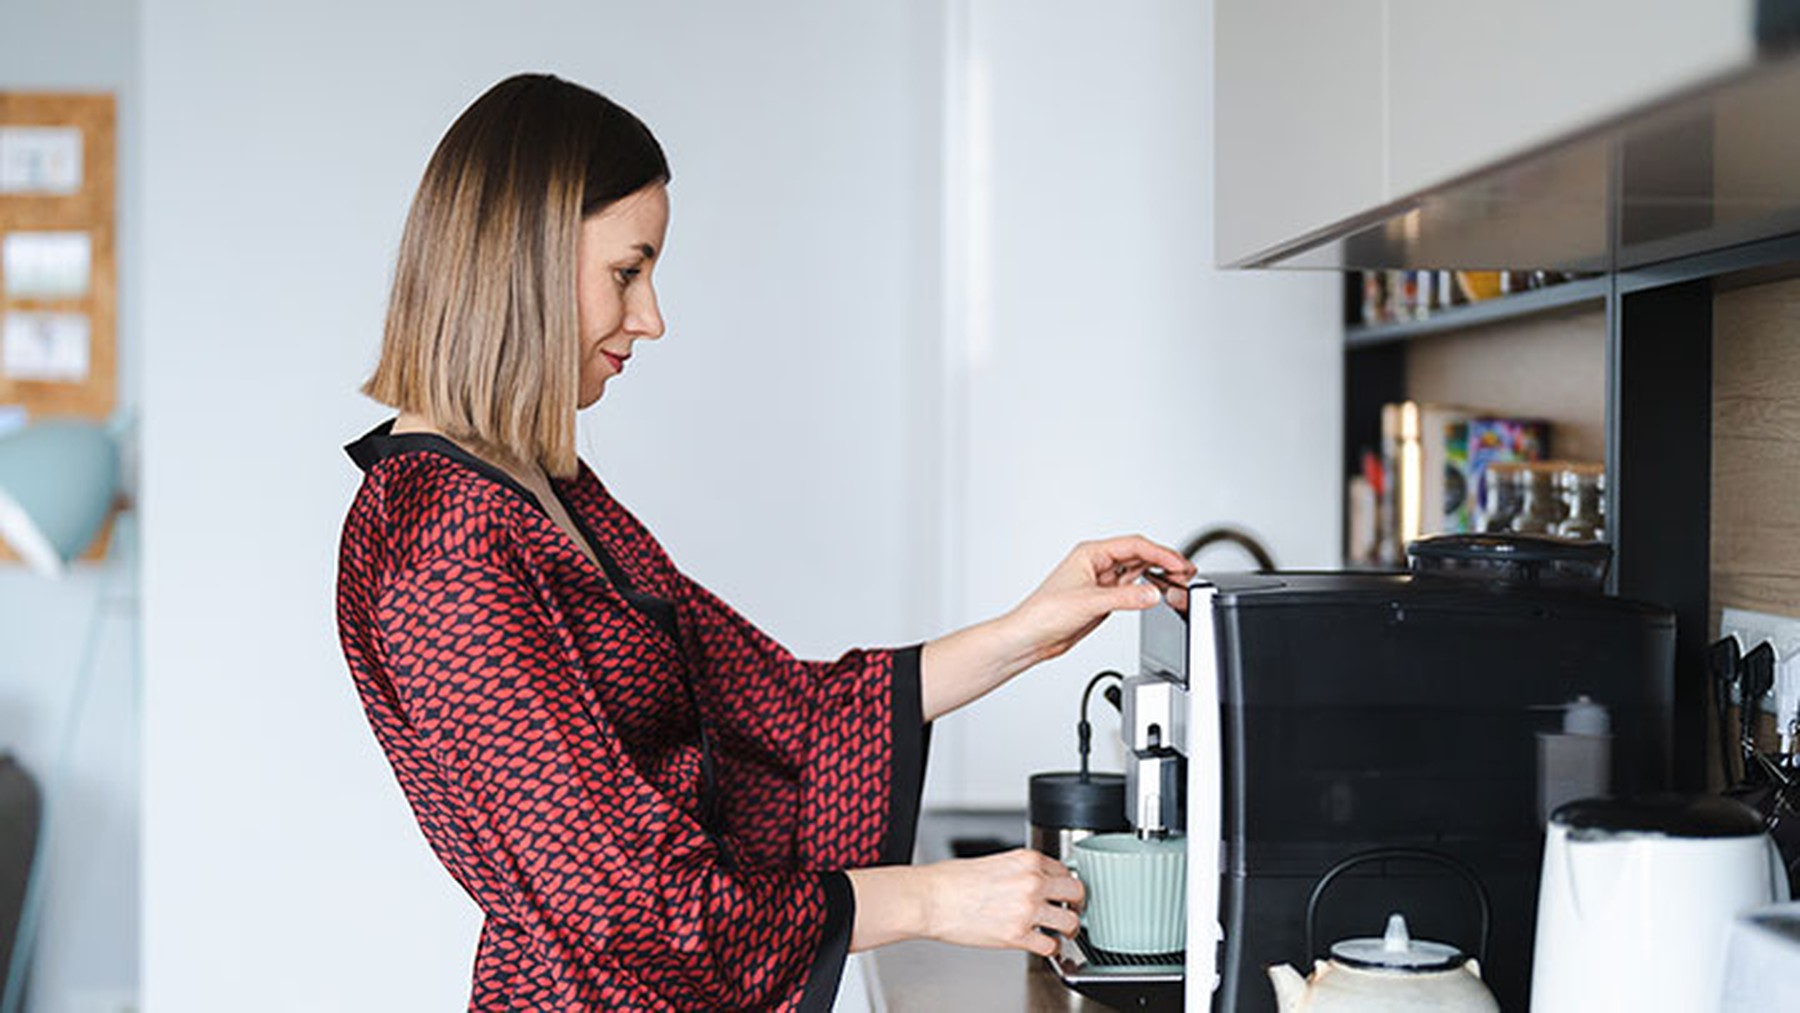 Mujer joven con una bata preparando café en una cafetera automática en su casa por la mañana.